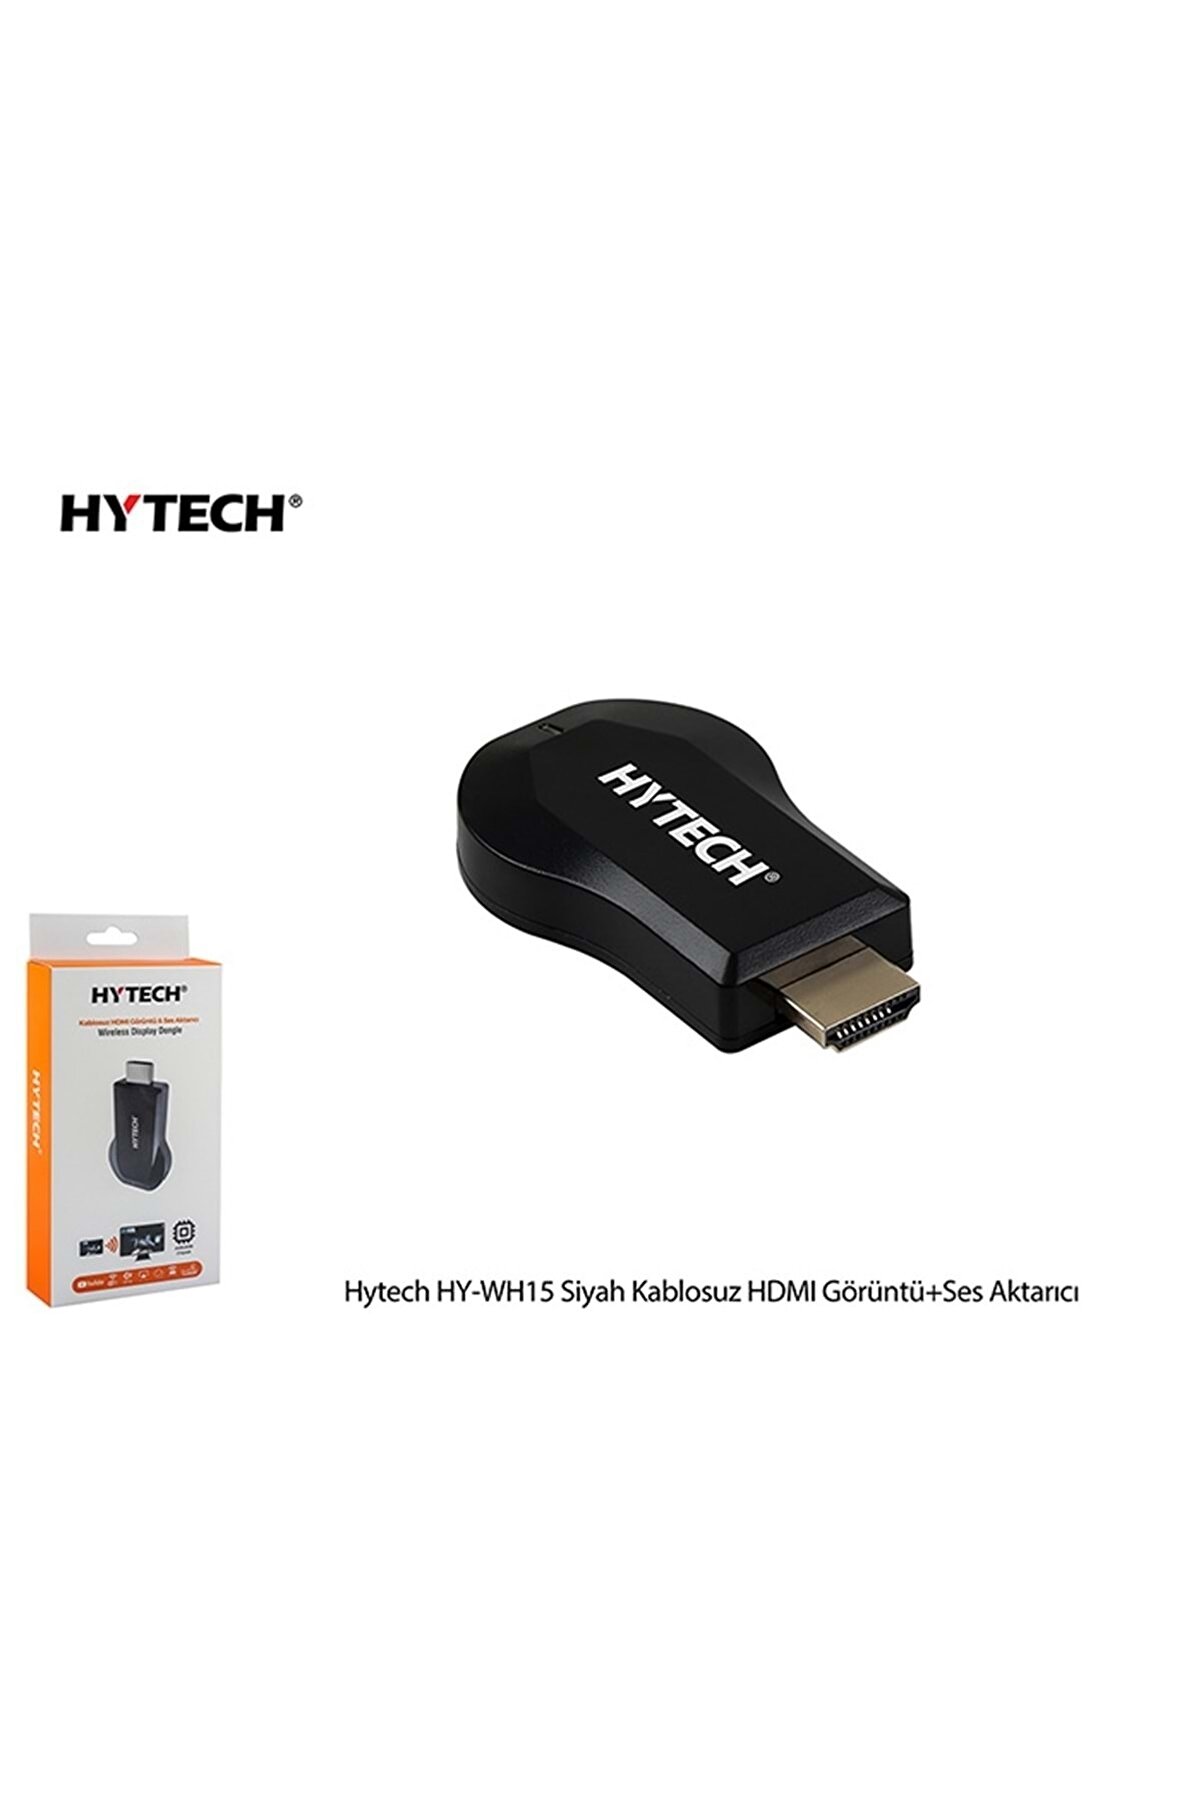 Hytech Hy-wh15 Kablosuz Hdmi Görüntü+ses Aktarıcı